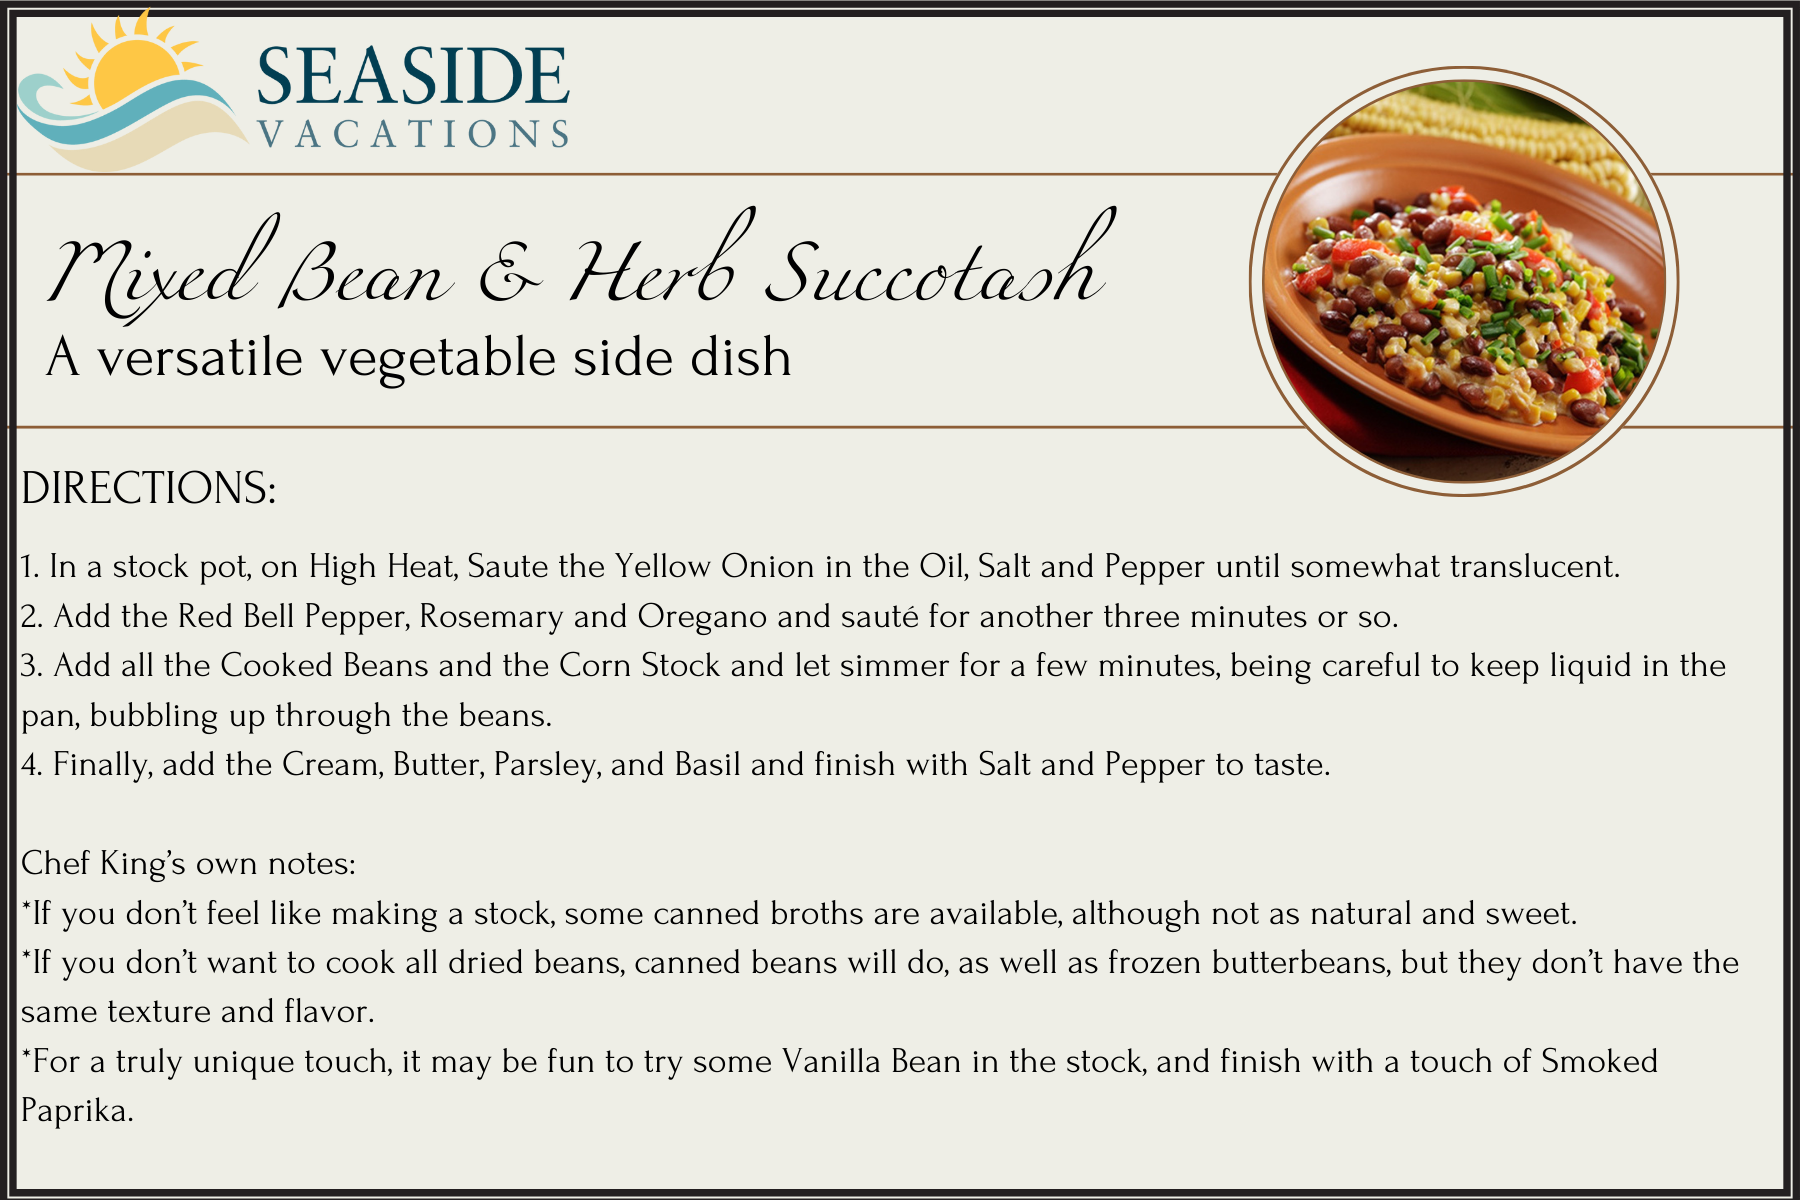 Mixed Bean & Herb Succotash Recipe Card